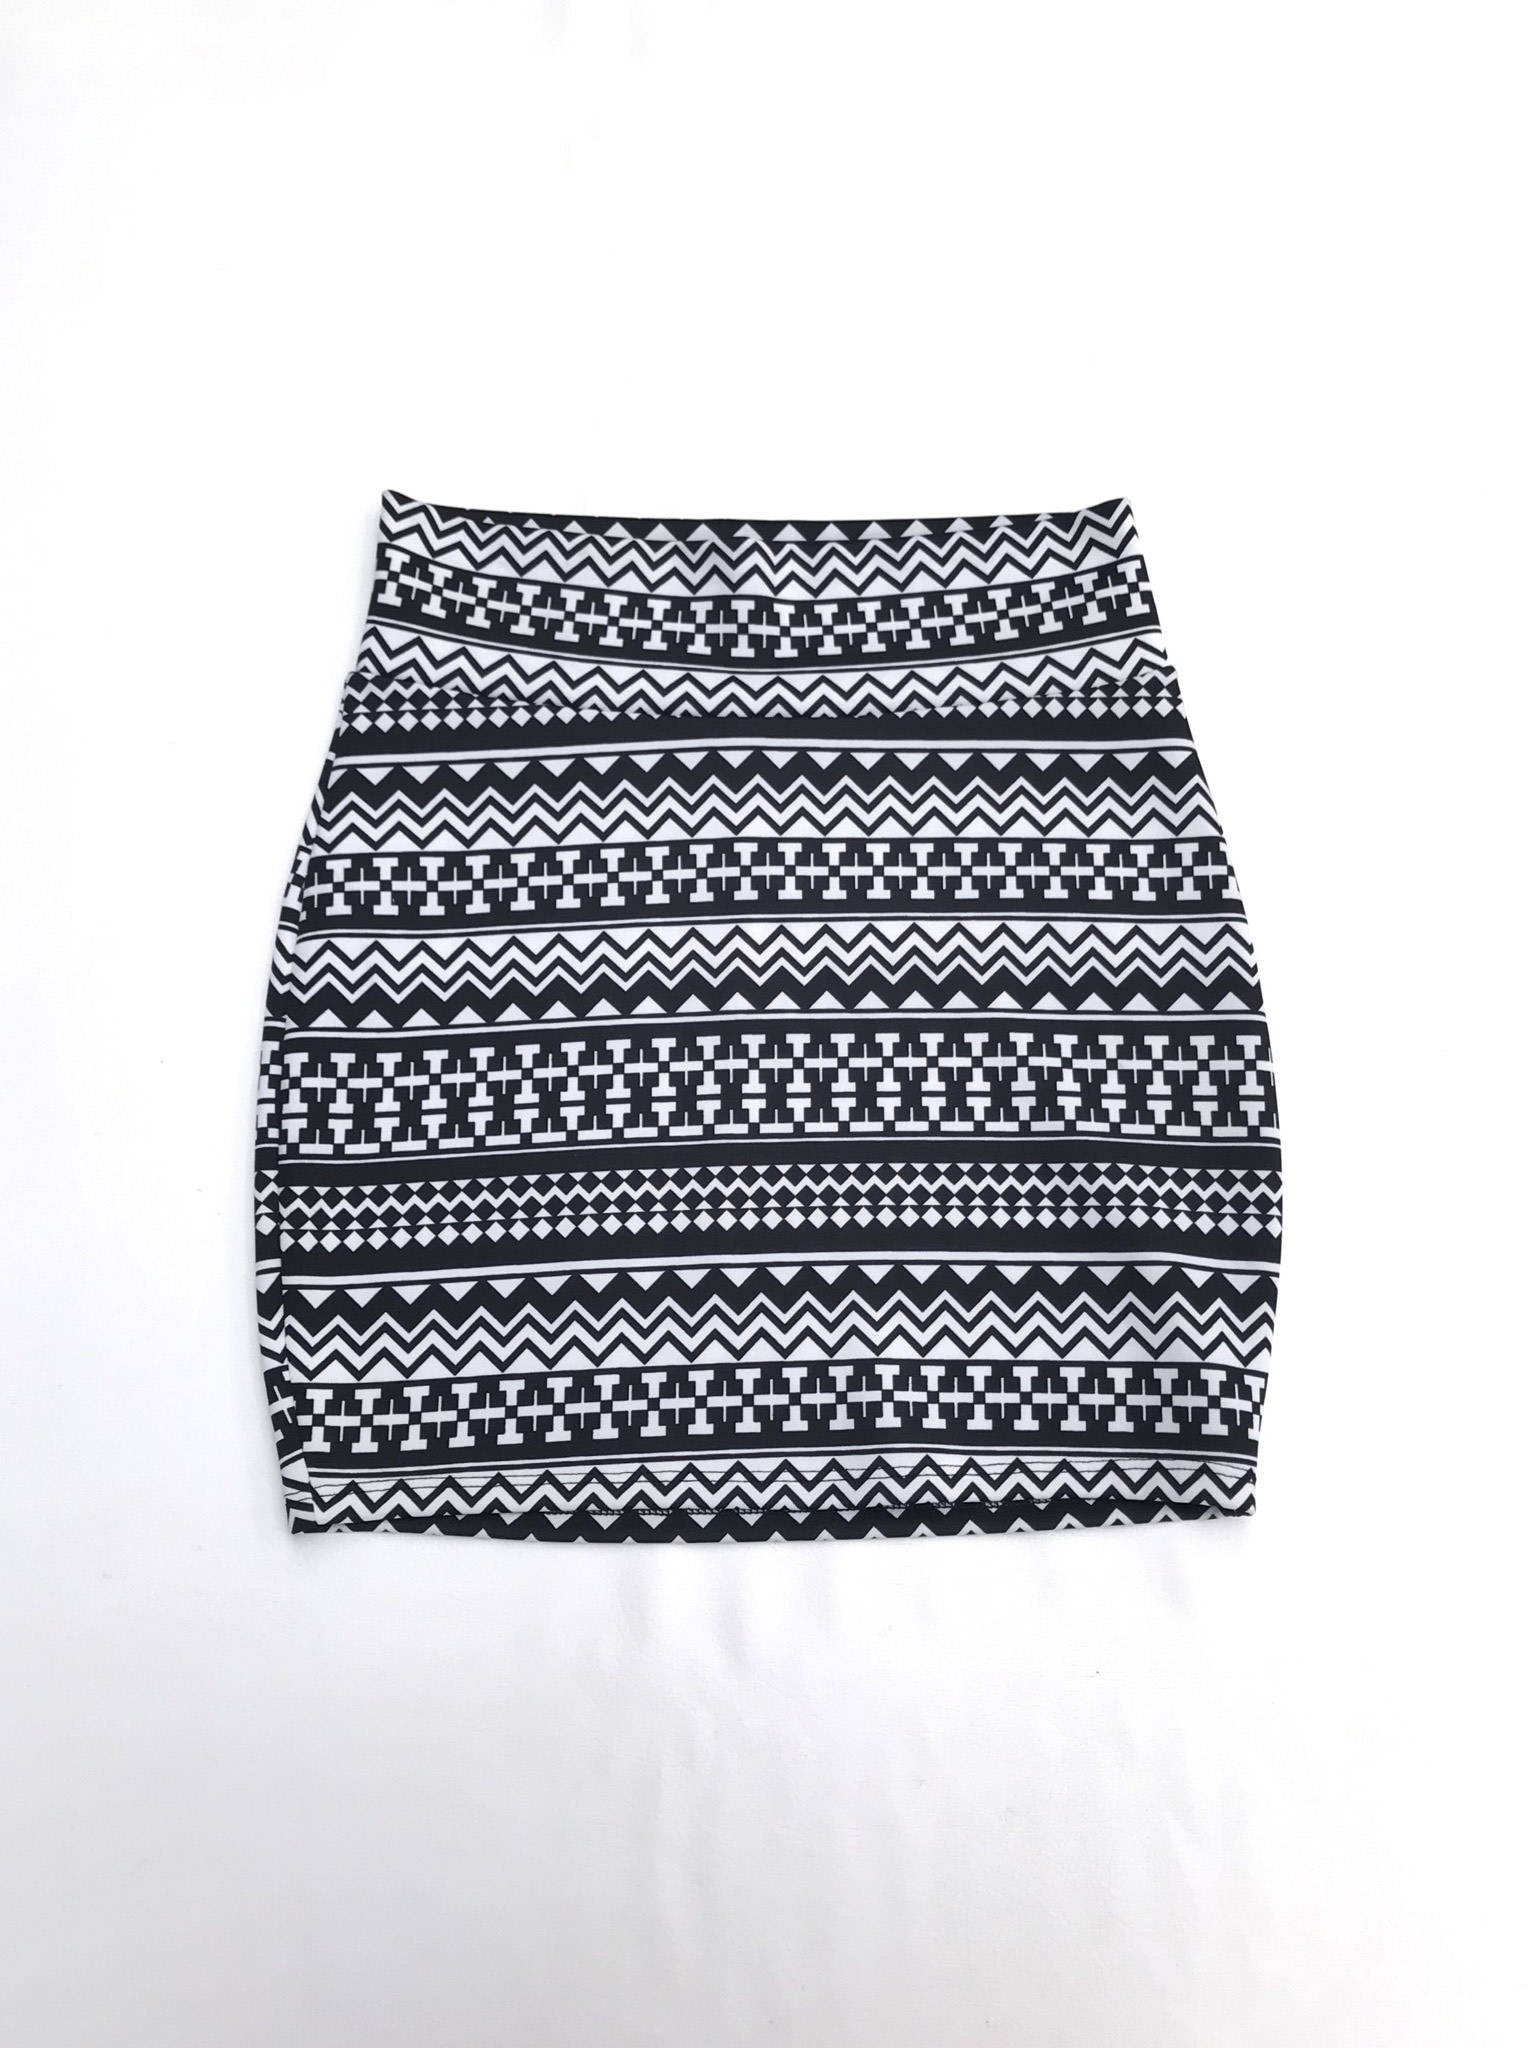 Falda blanca con estampado tribal negro, pegada al cuerpo, ligeramente stretch. Largo 44cm
talla S